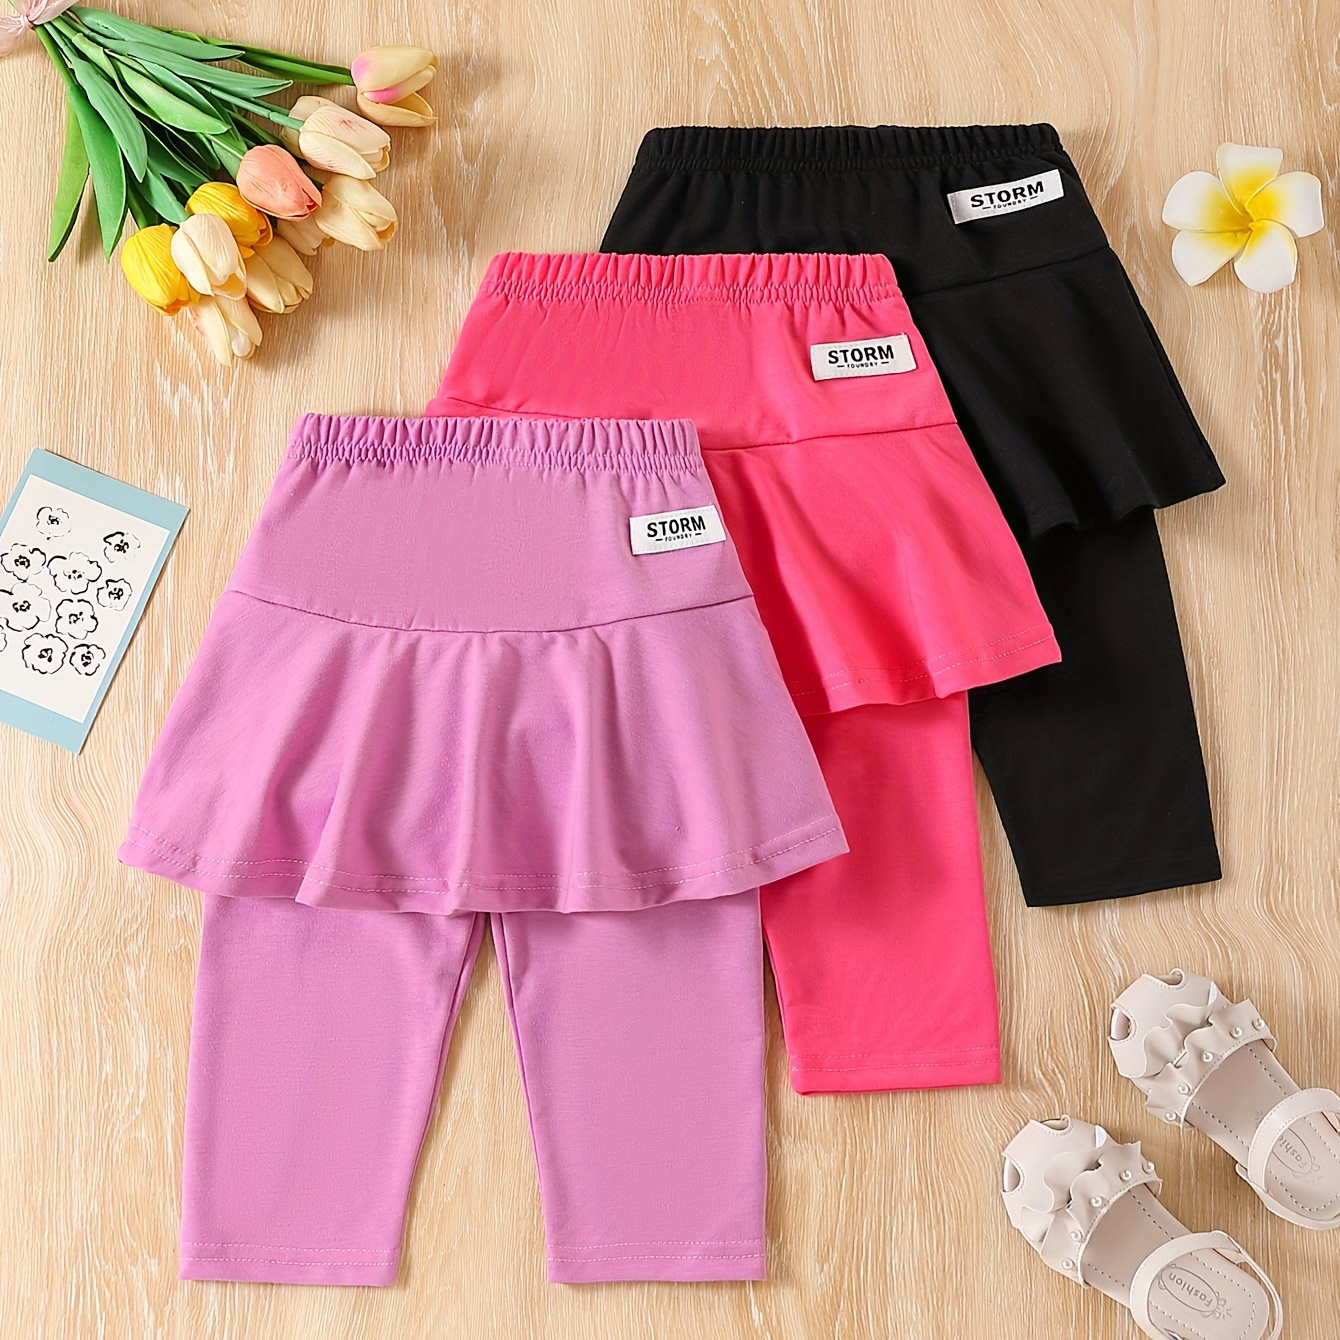 

Girls 3pcs/set Stretchy & Comfy Solid Colored Skorts For Spring & Summer, Culotte